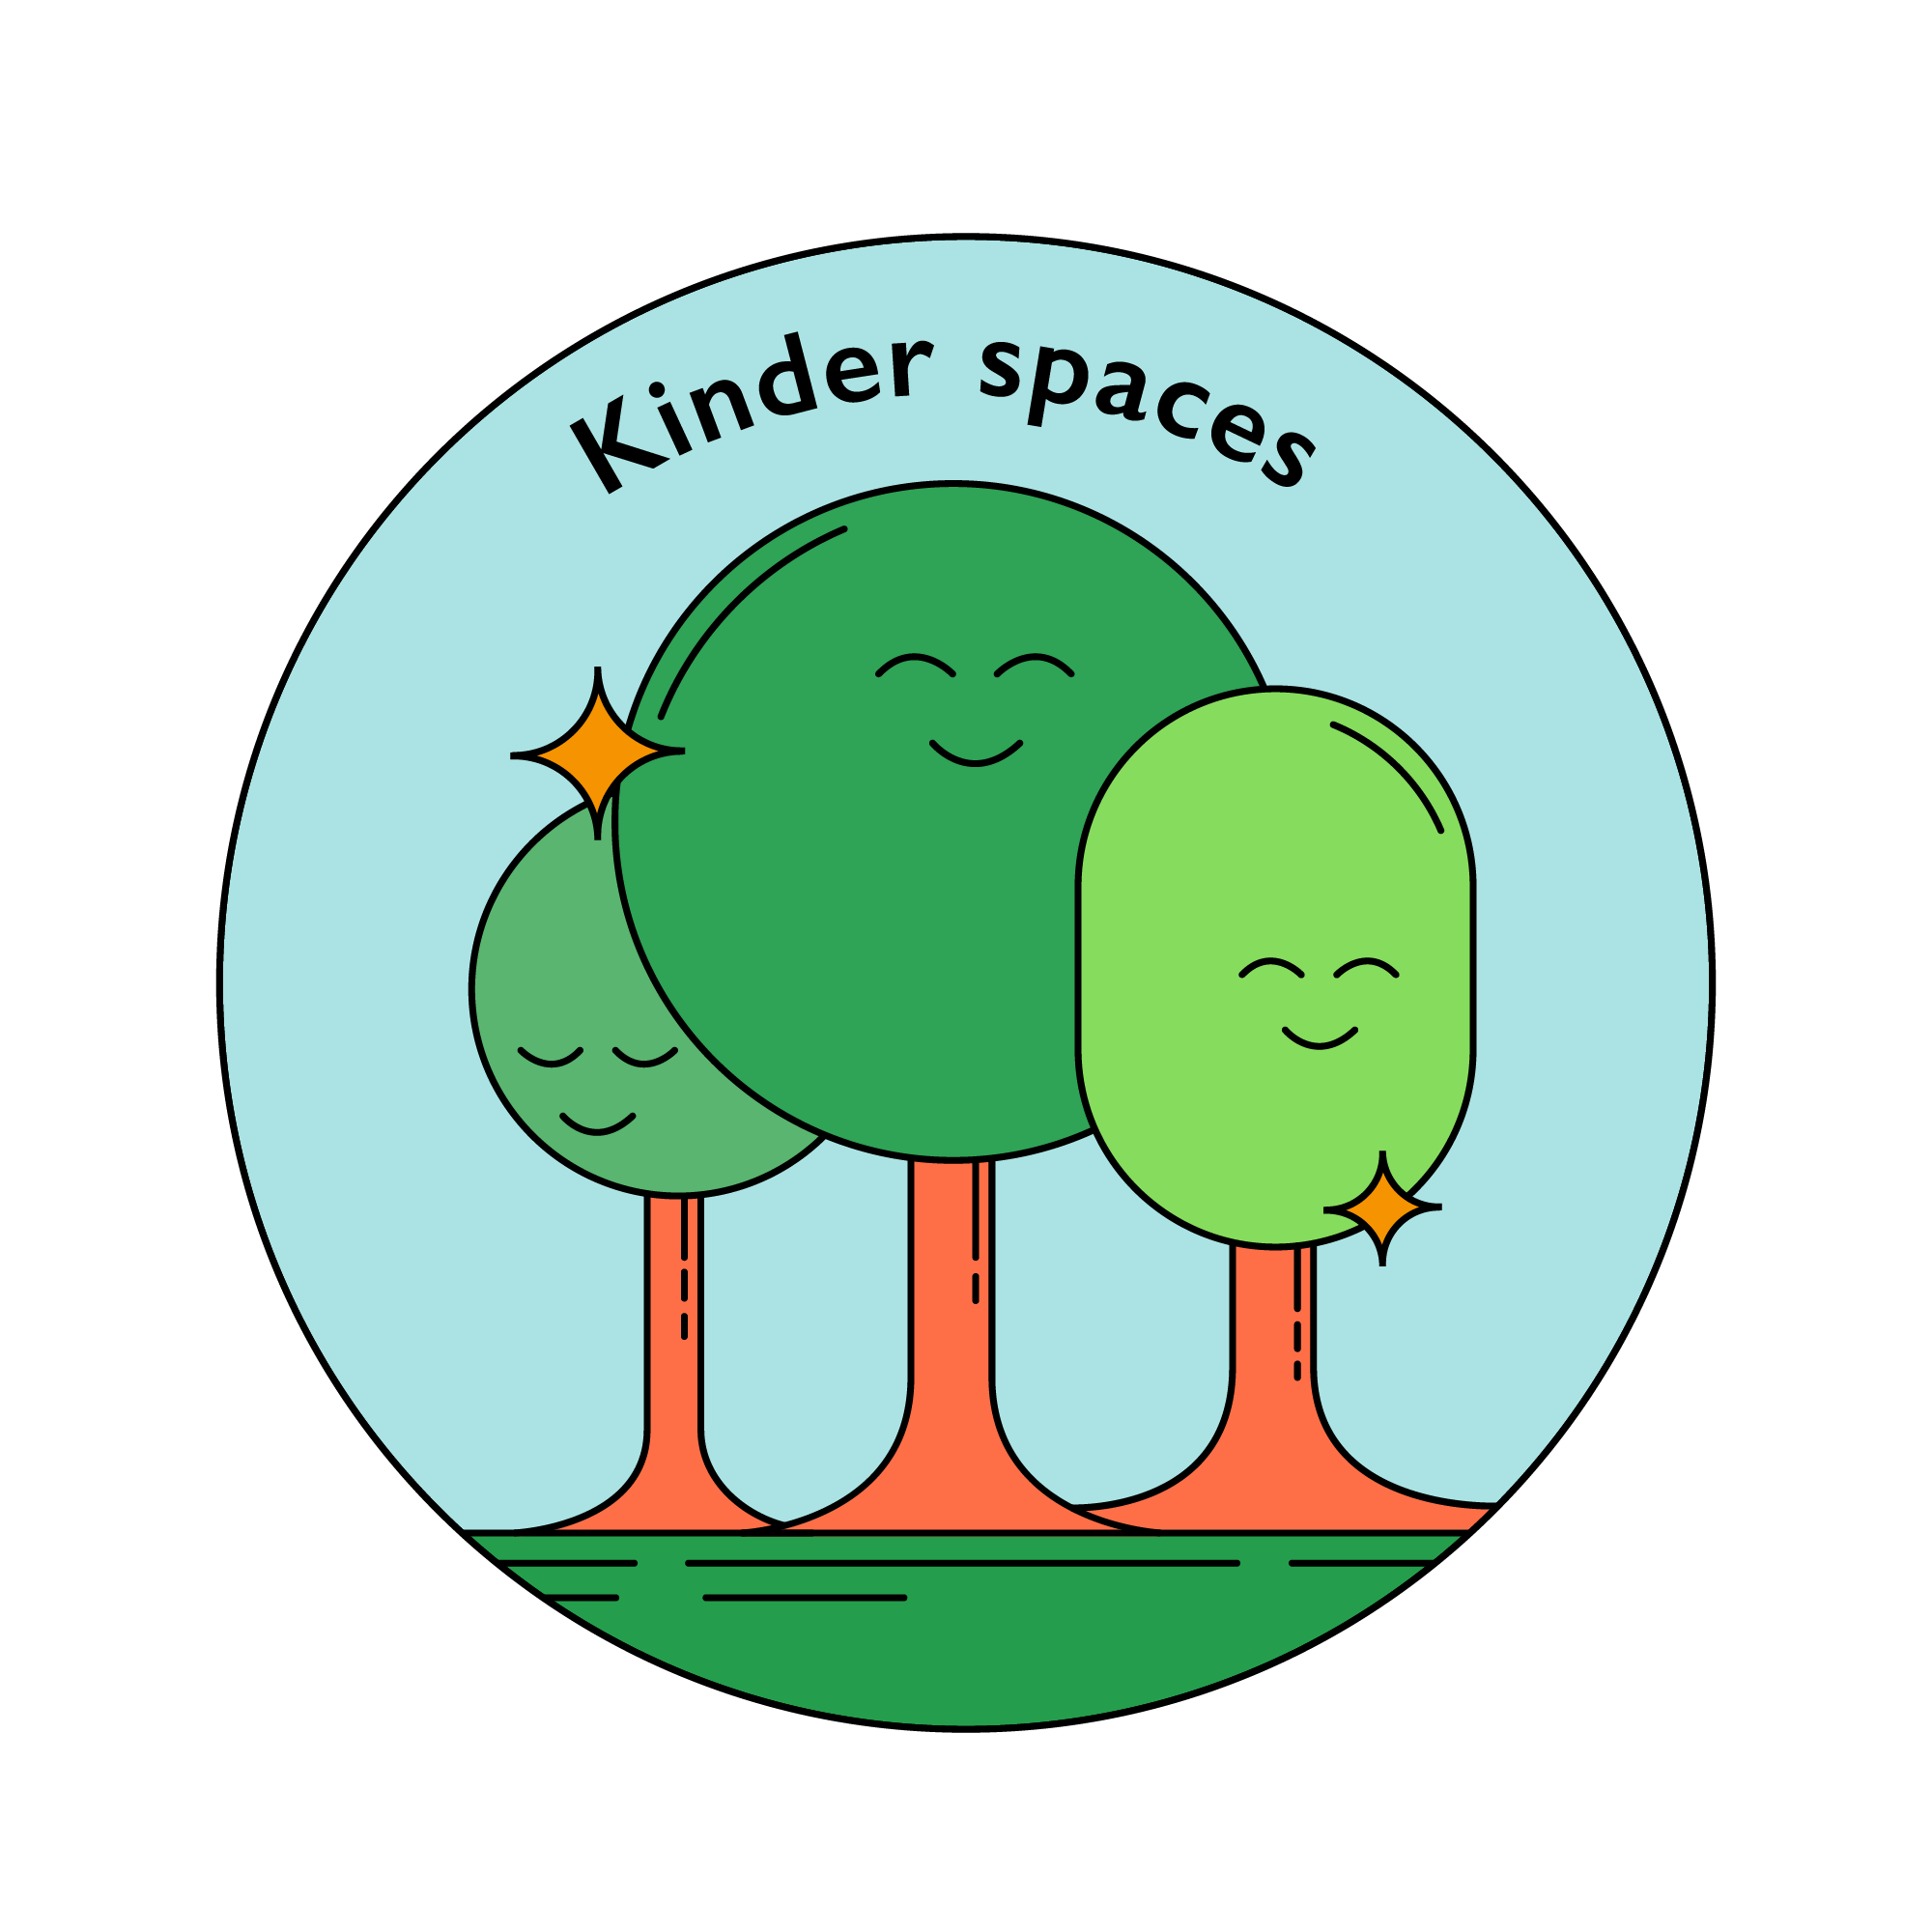 Kinder space